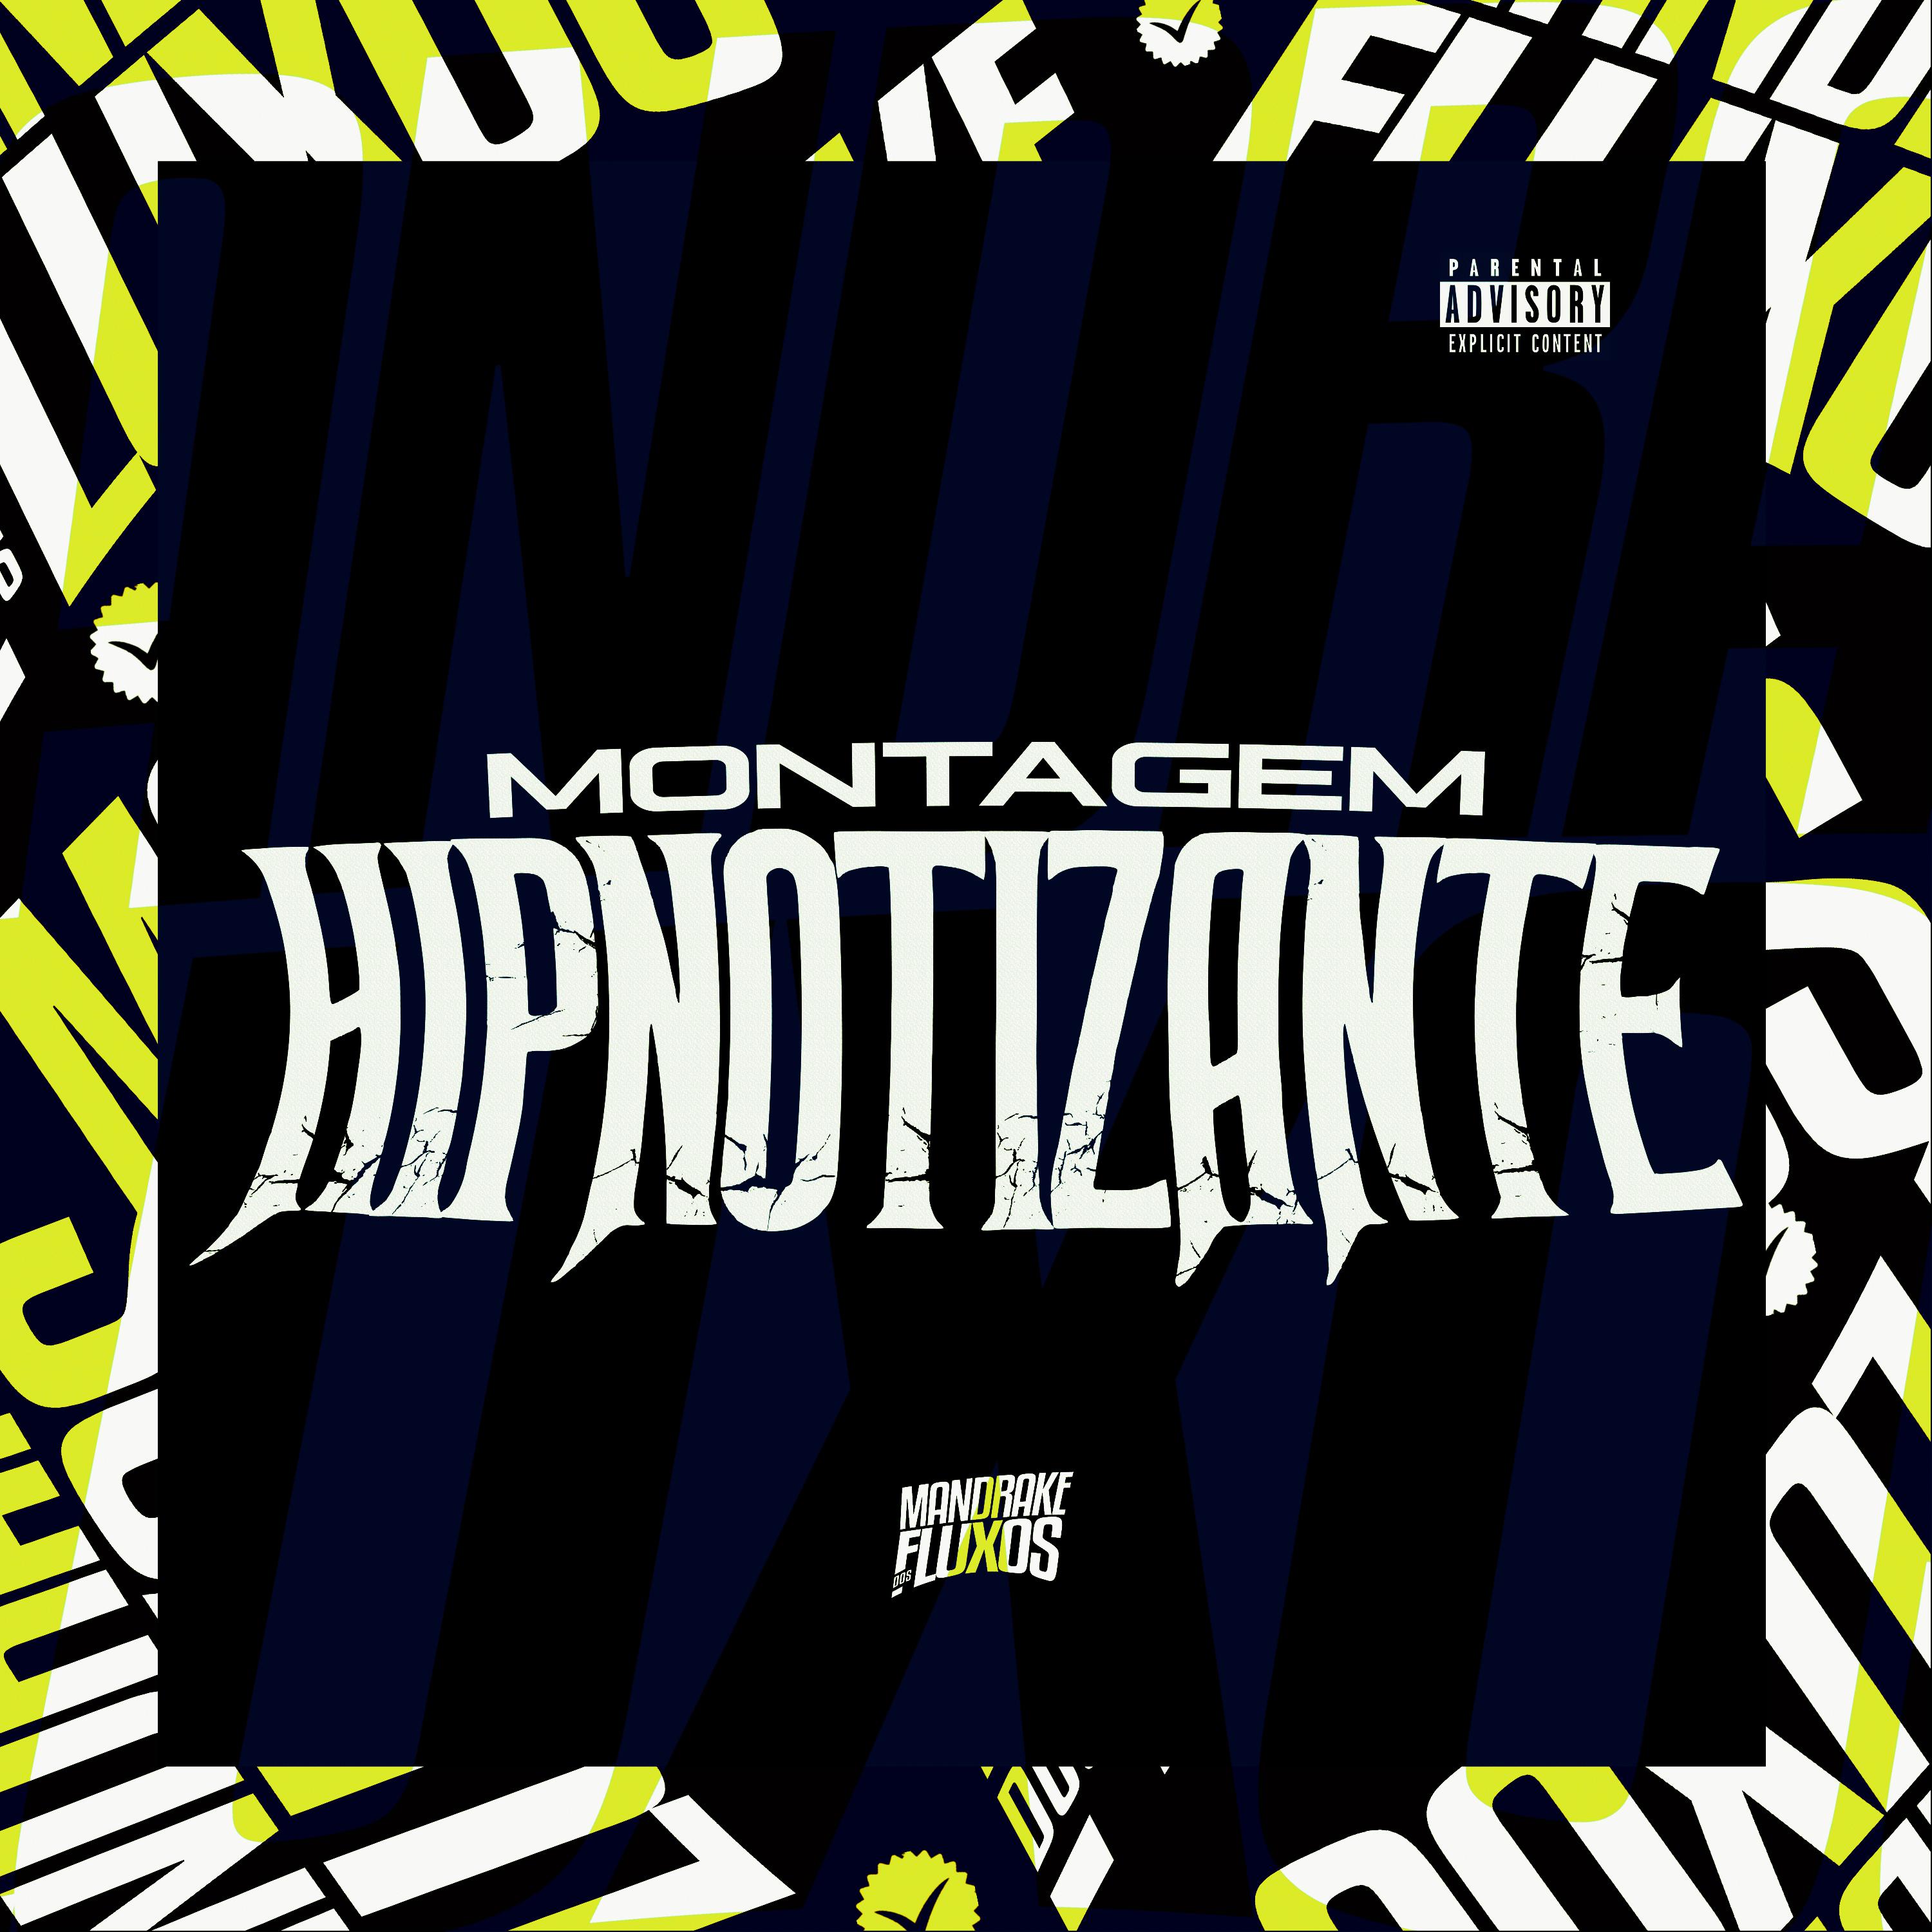 Постер альбома Montagem Hipnotizante